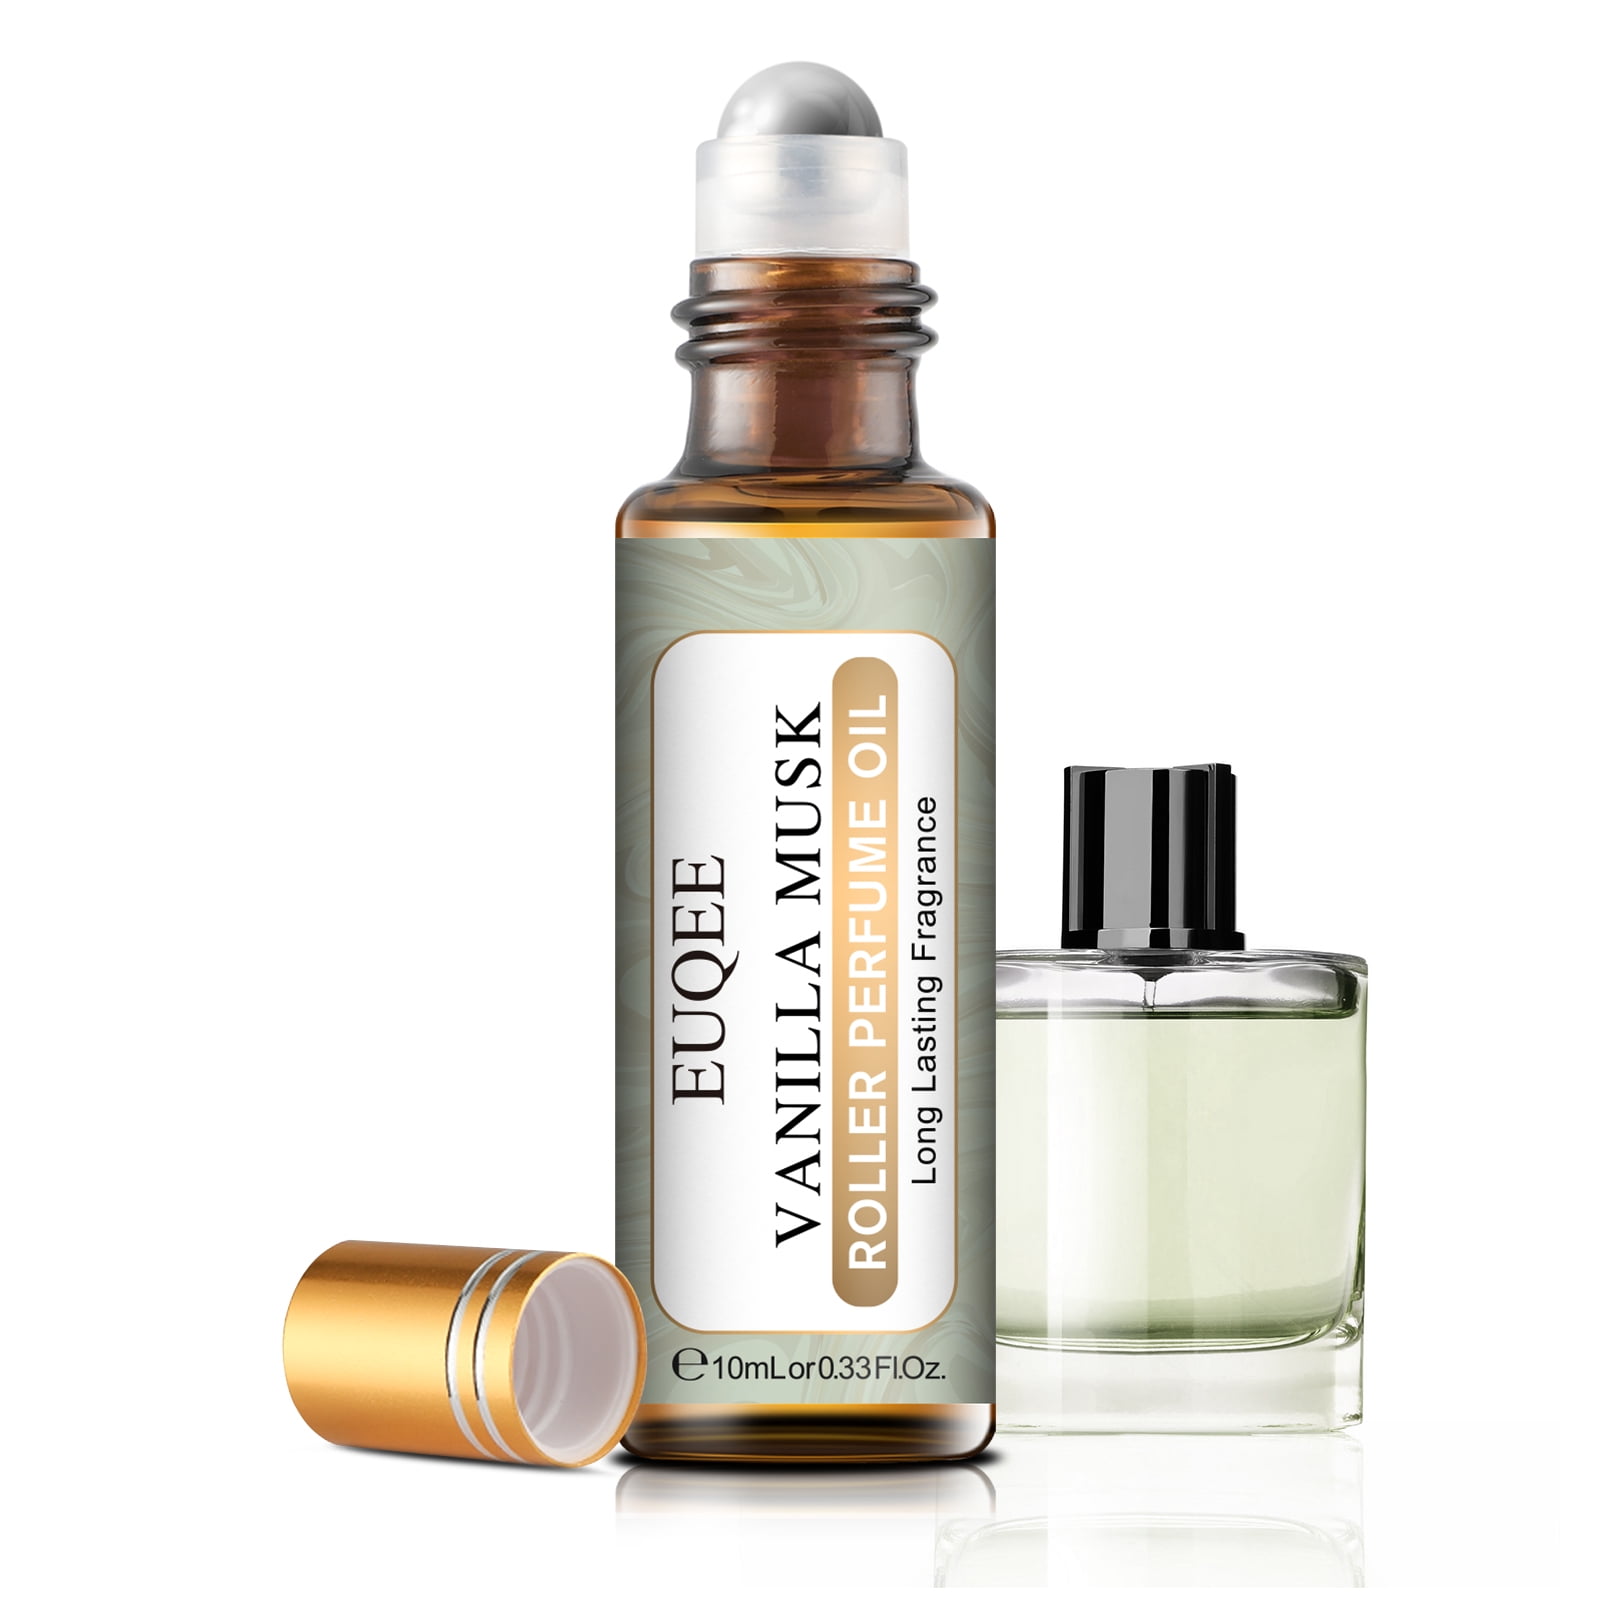 EUQEE Vanilla Musk Roll-on Perfume Oil, Therapeutic Grade, Pure